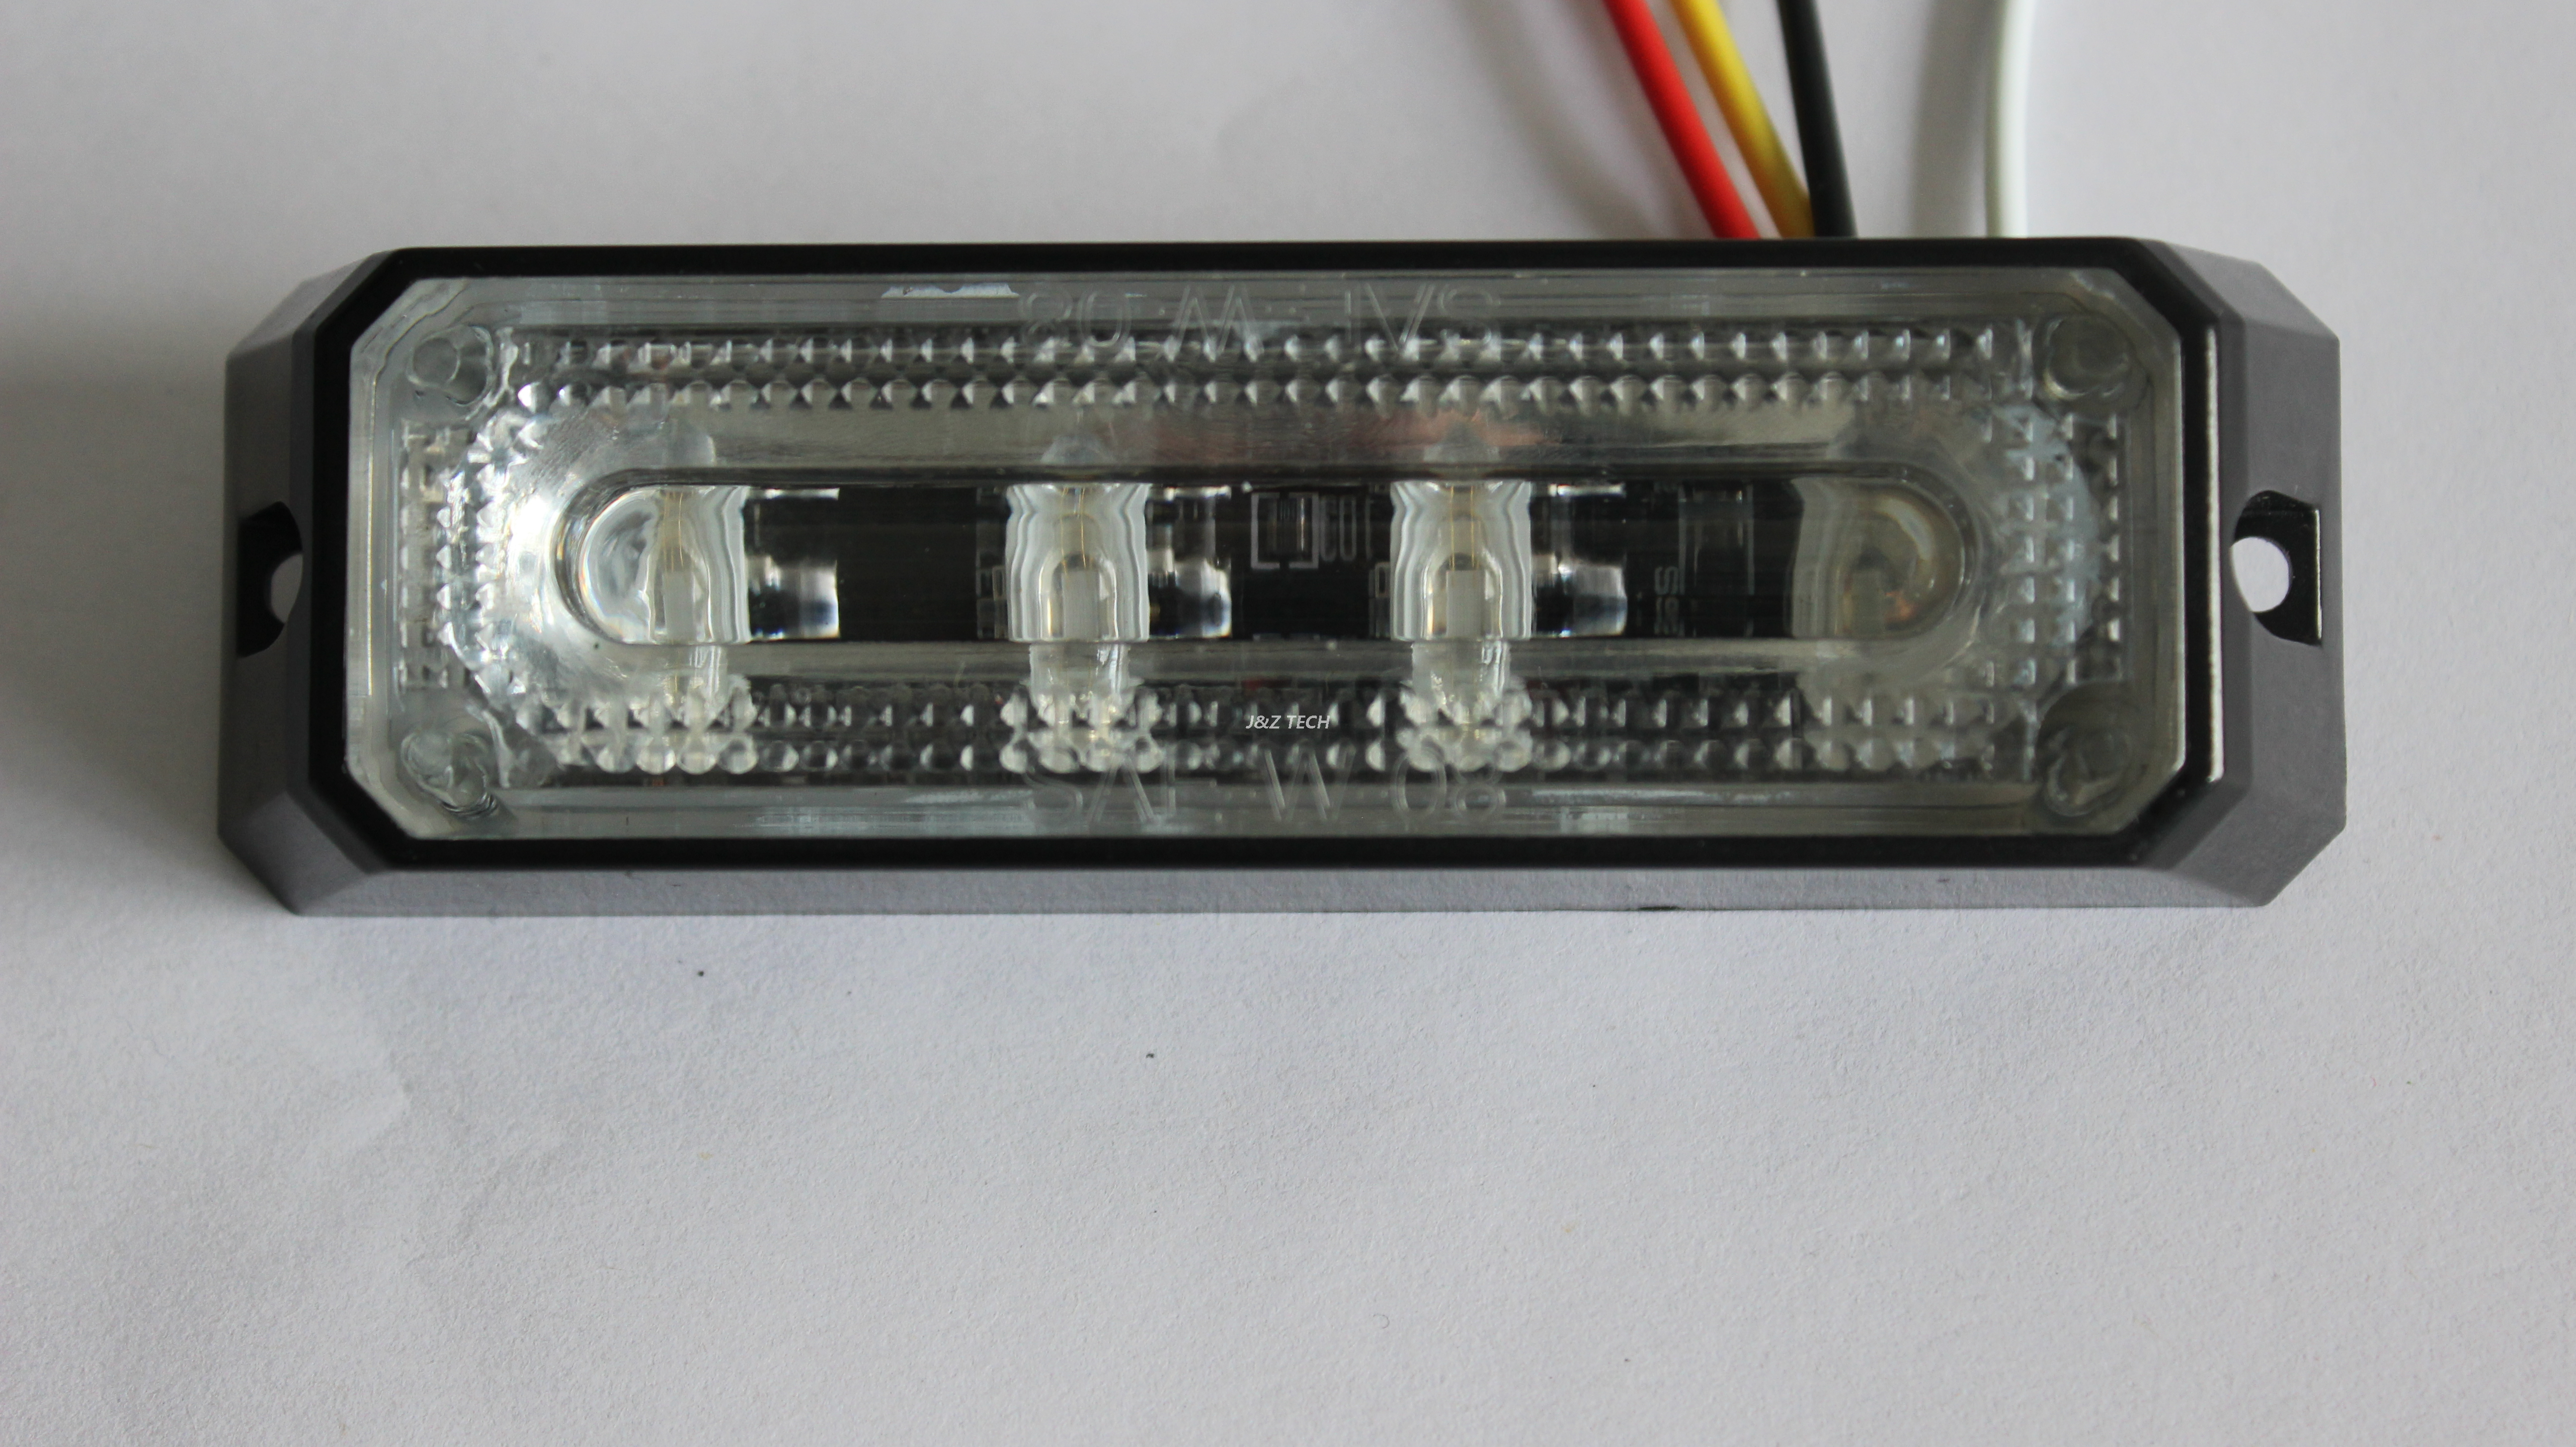 Luces estroboscópicas LED de emergencia de alta calidad con lente de PC lineal 4